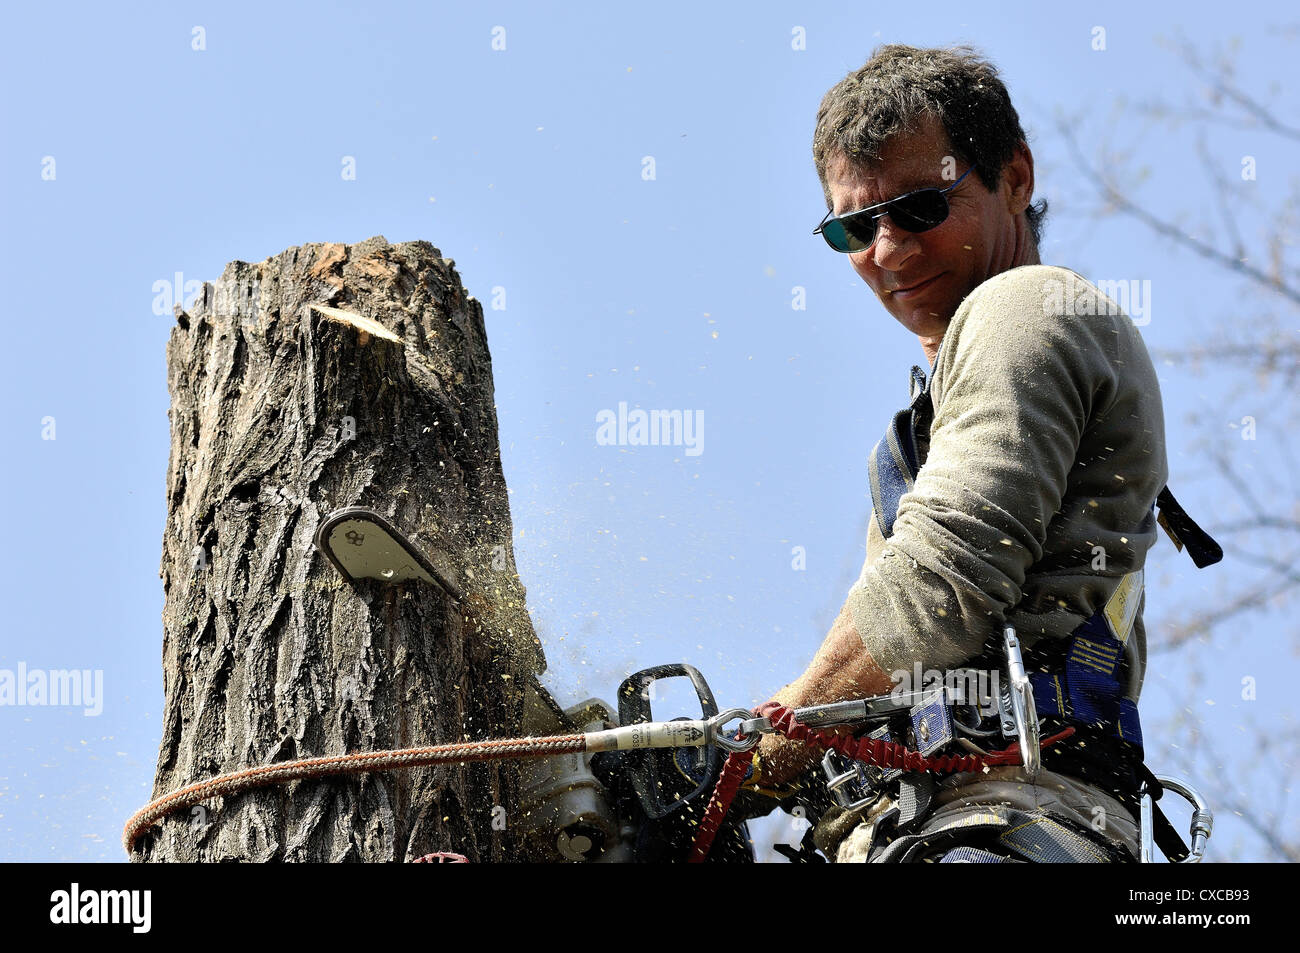 Lumberjack alta in una struttura ad albero con fune di arrampicata su cavi di protezione e sega a catena Foto Stock